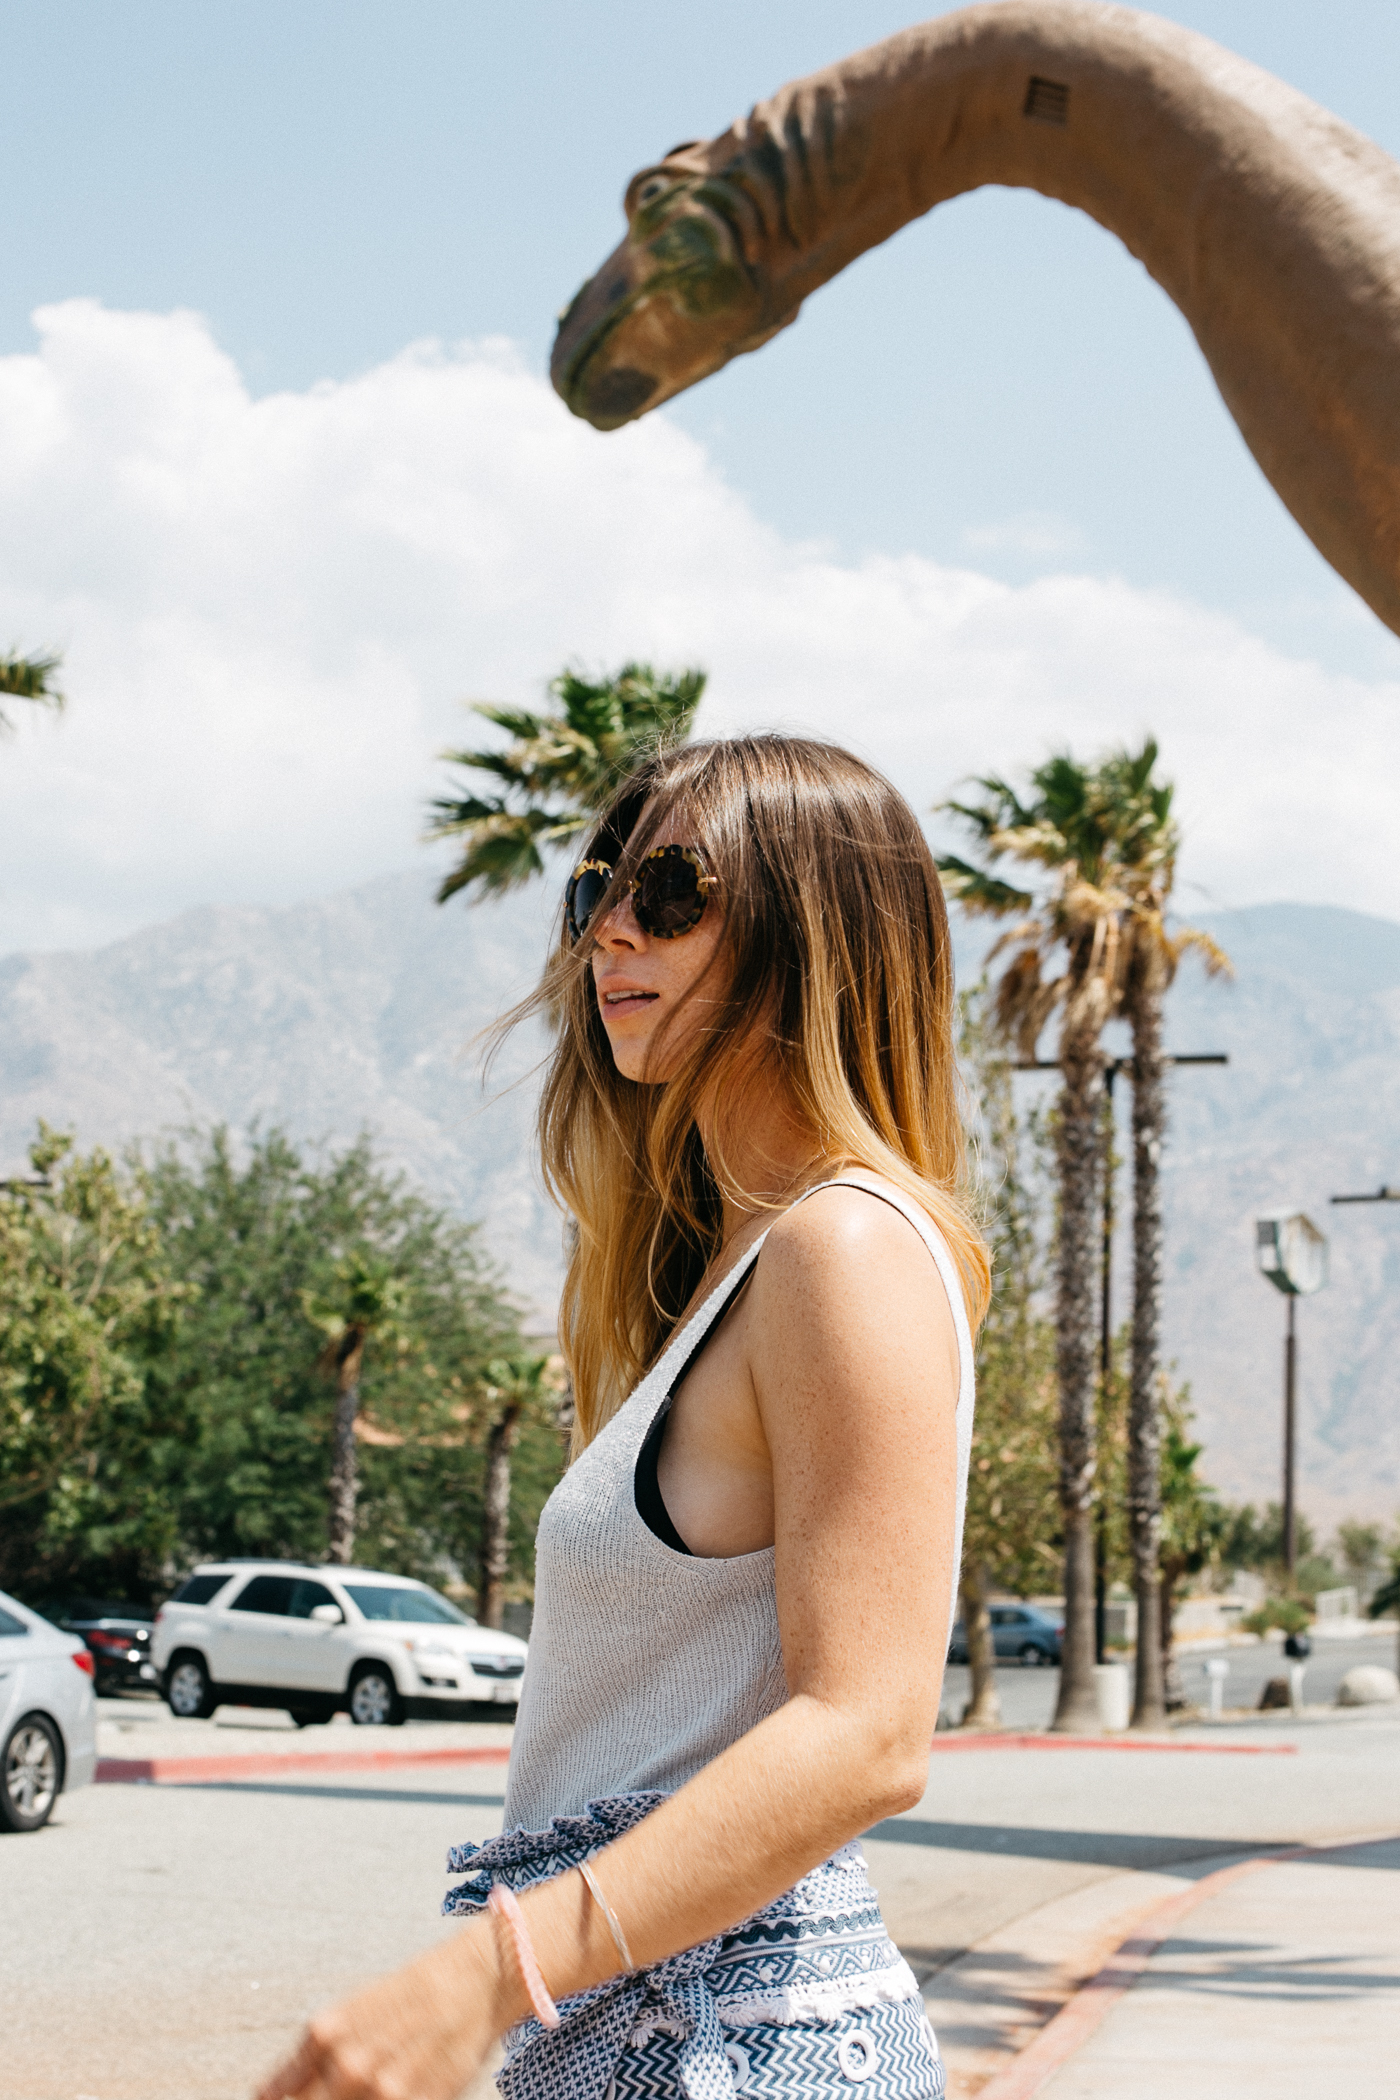 Things To Do In Palm Springs: Cabazon Dinosaurs | Bikinis & Passports